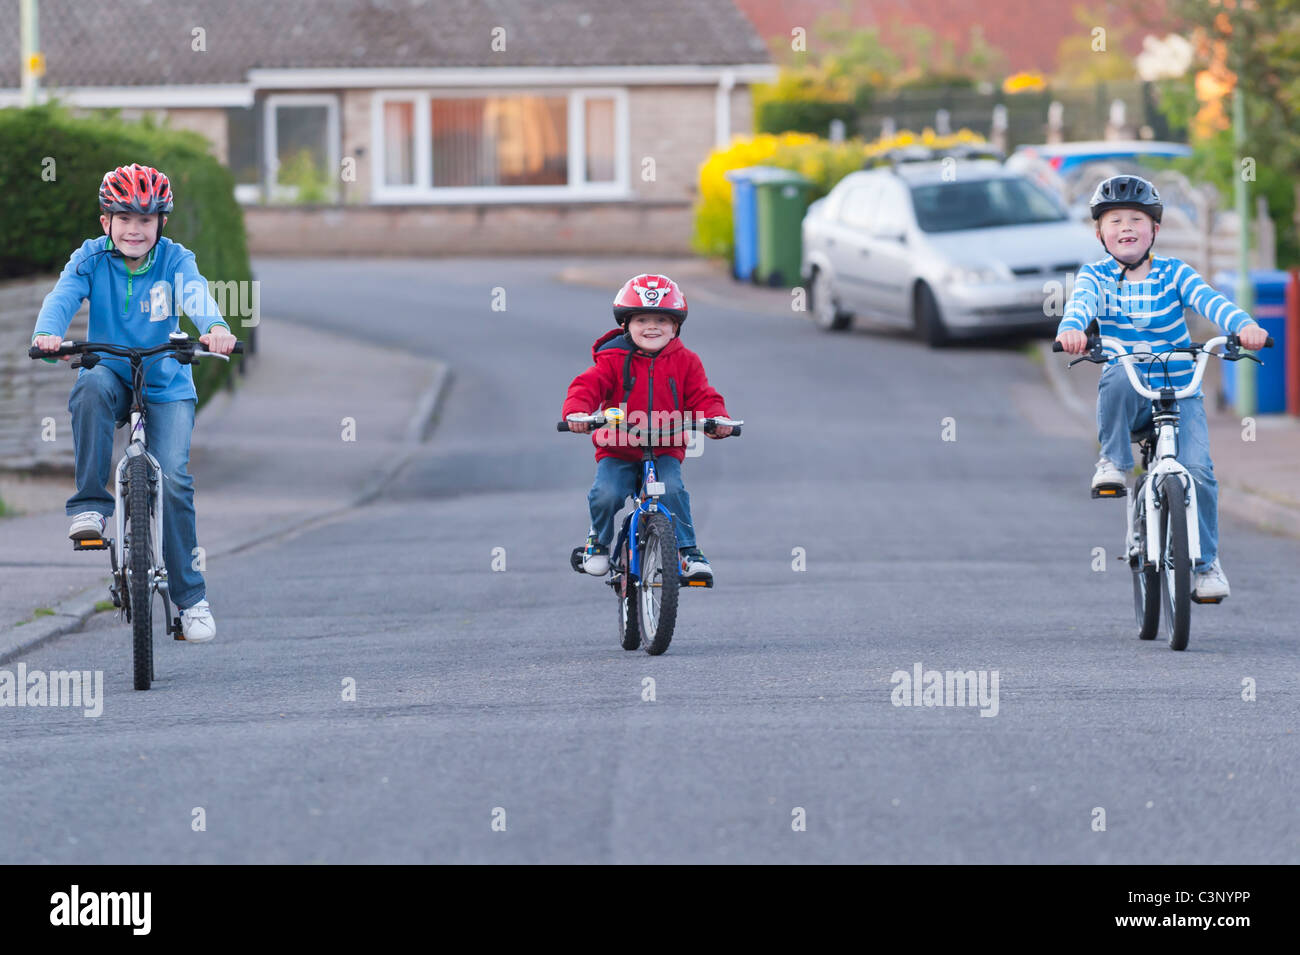 Three boys riding their bikes in a uk street Stock Photo